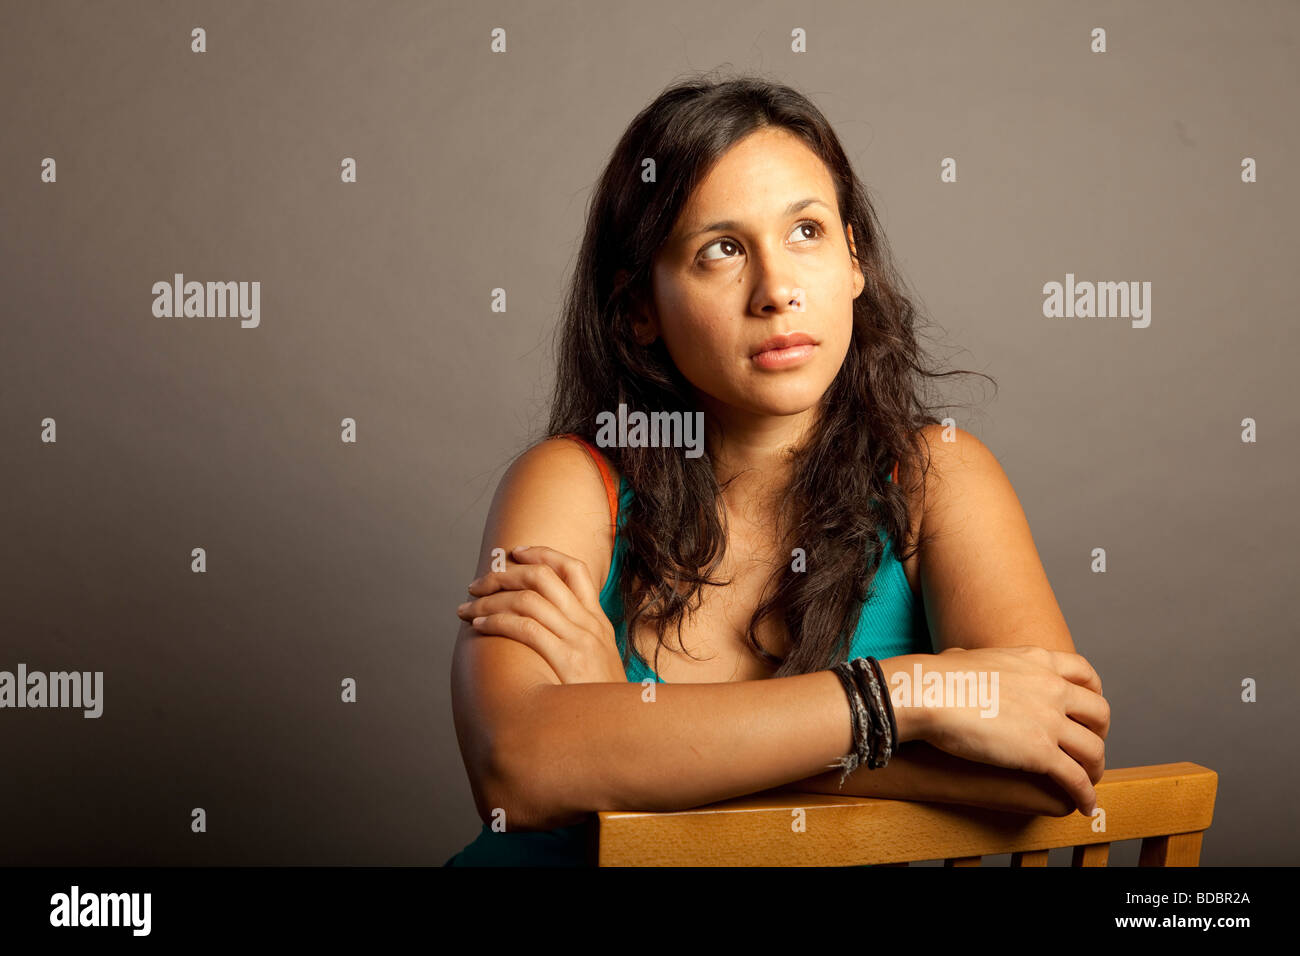 Porträt von Hispanic Latina Frauen vor grauem Hintergrund, sie hat ernste Ausdruck, Blick in die Kamera. Stockfoto